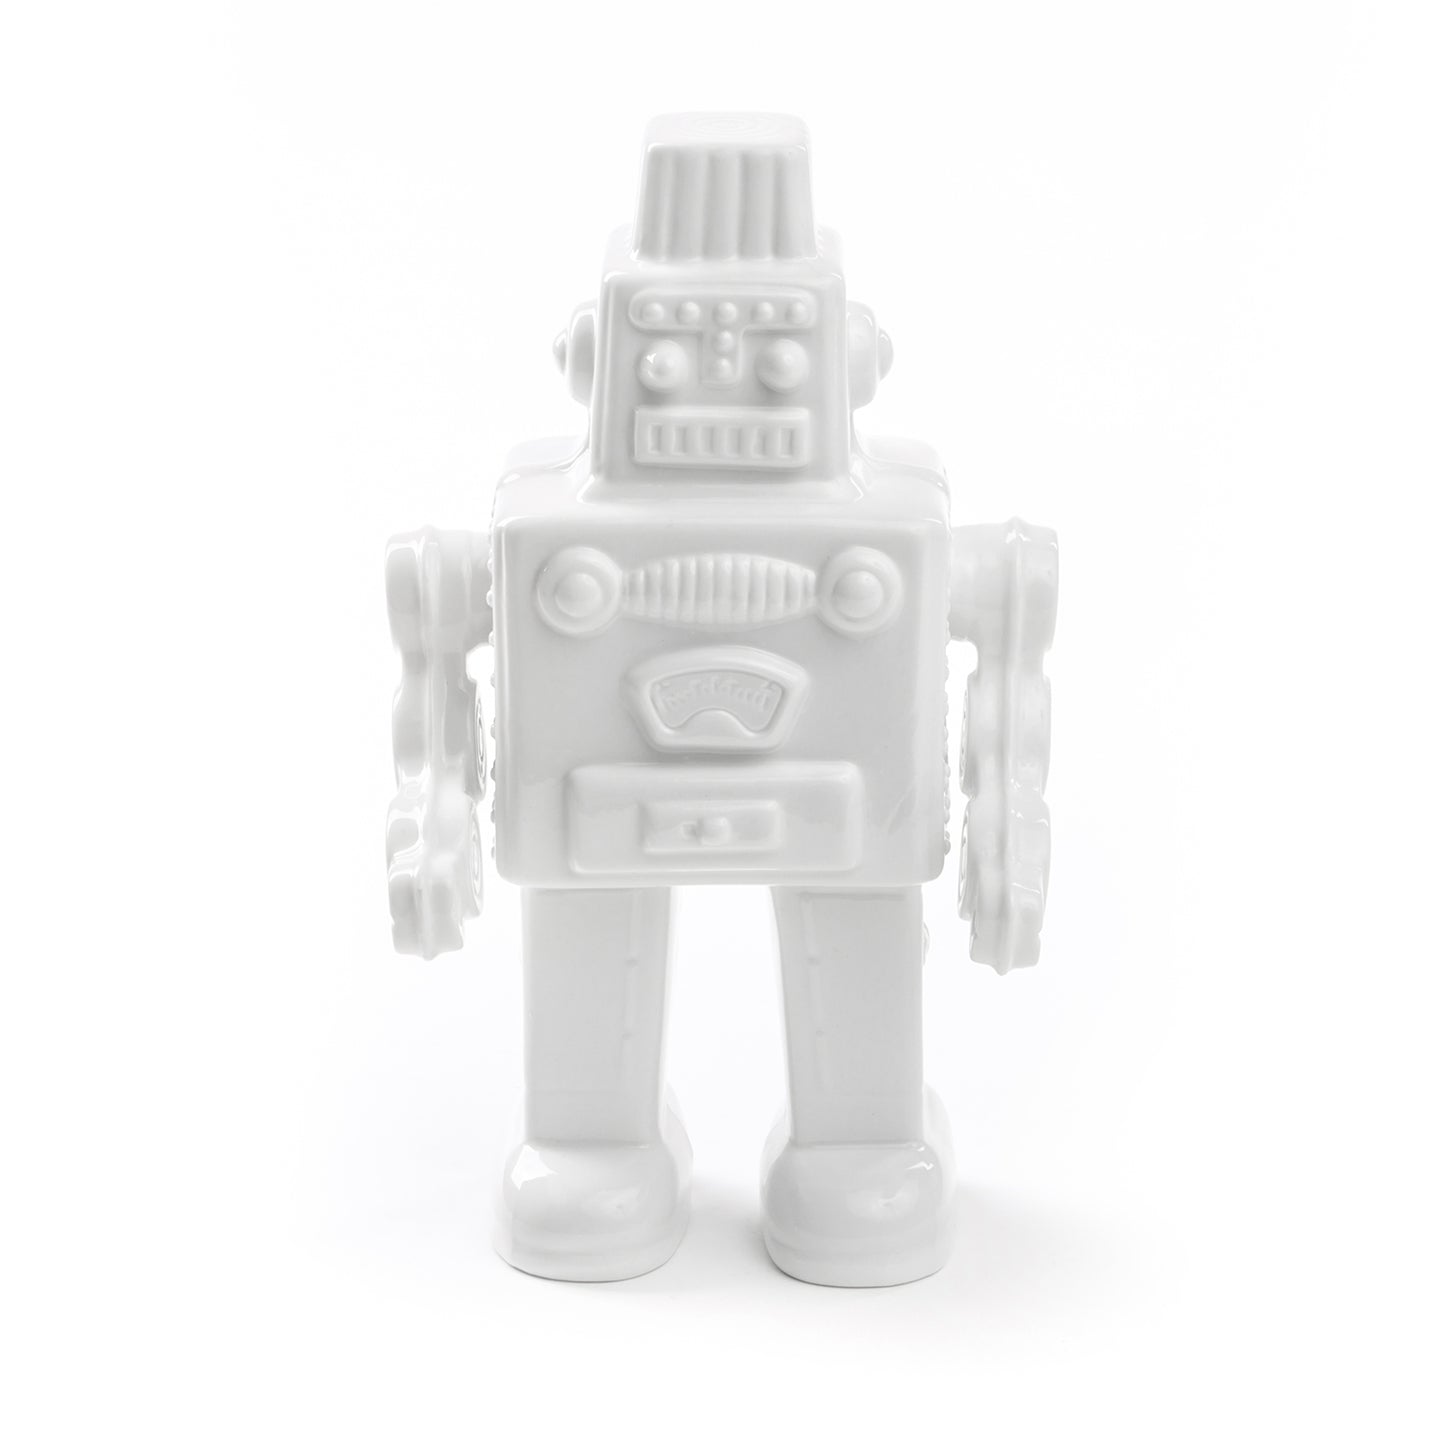 Robot - White Porcelain Object